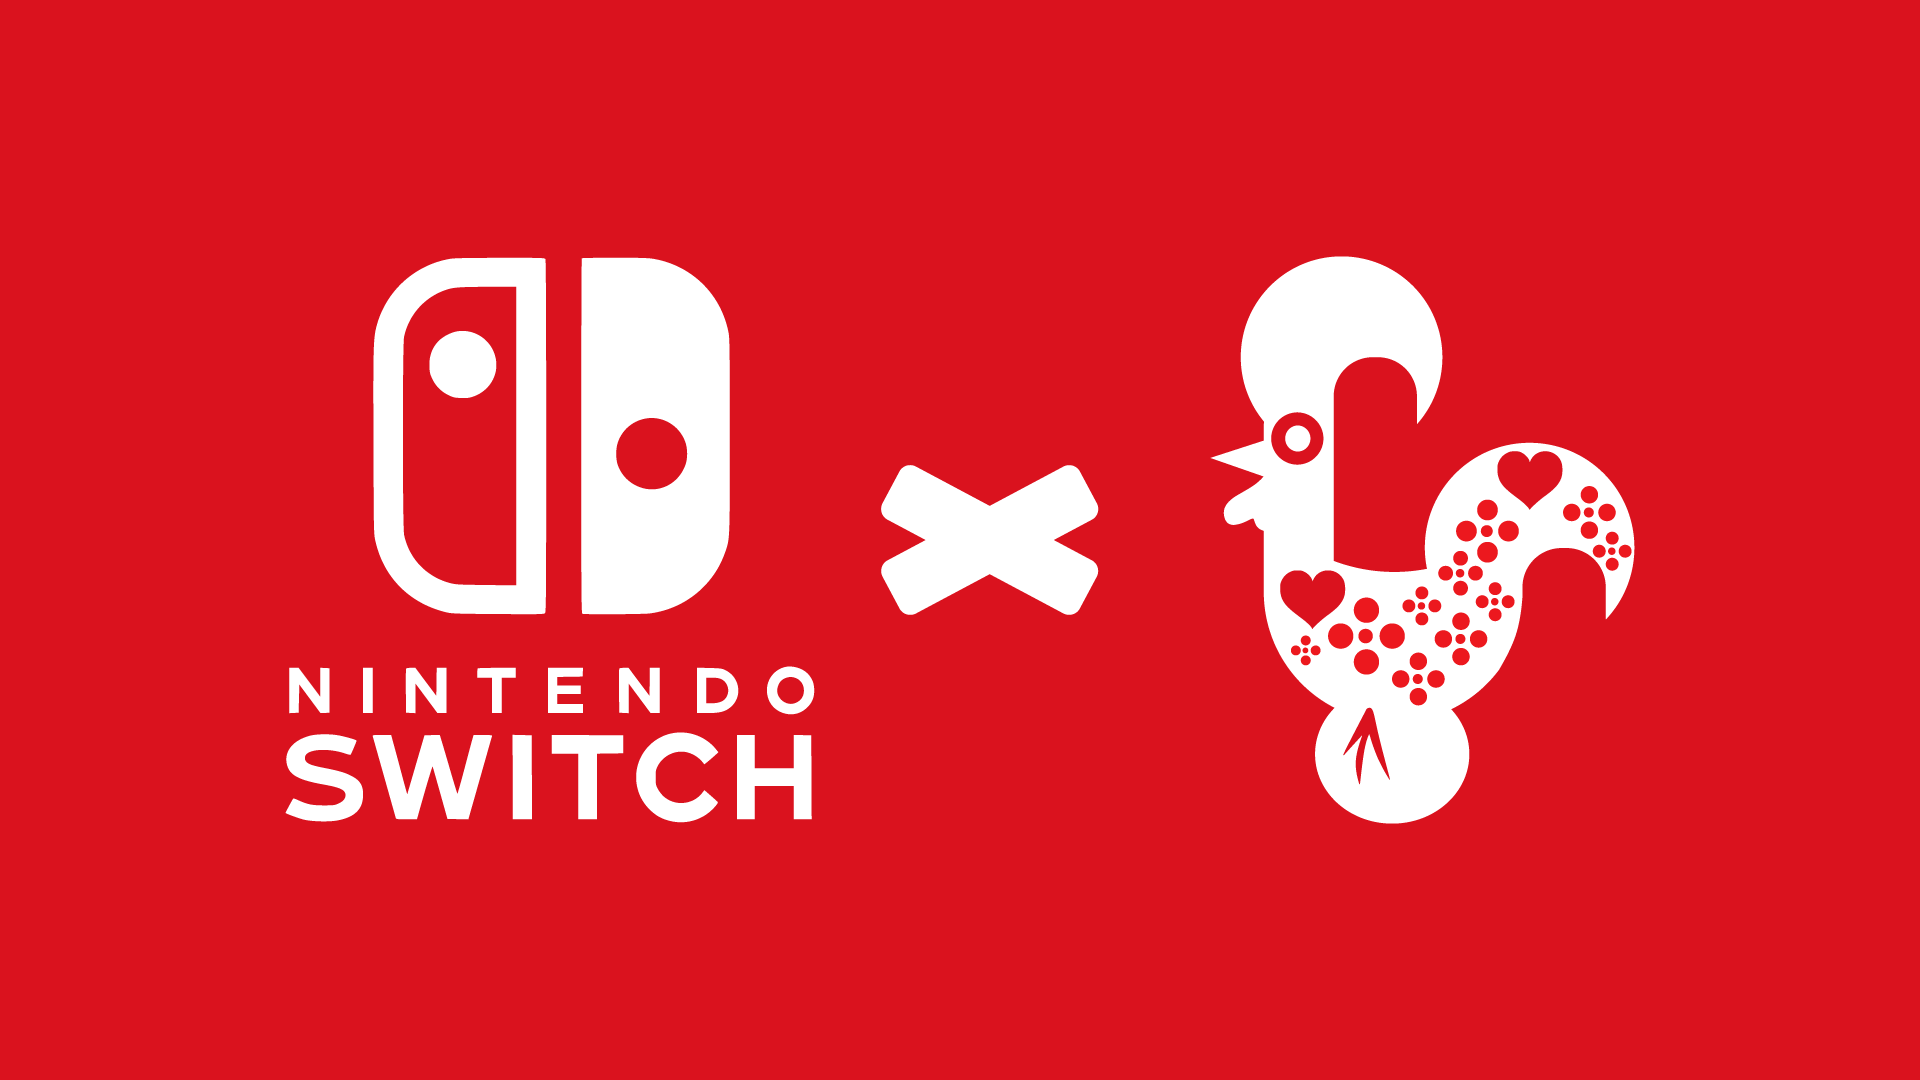 Moorhuhn Remake, Aplicações de download da Nintendo Switch, Jogos